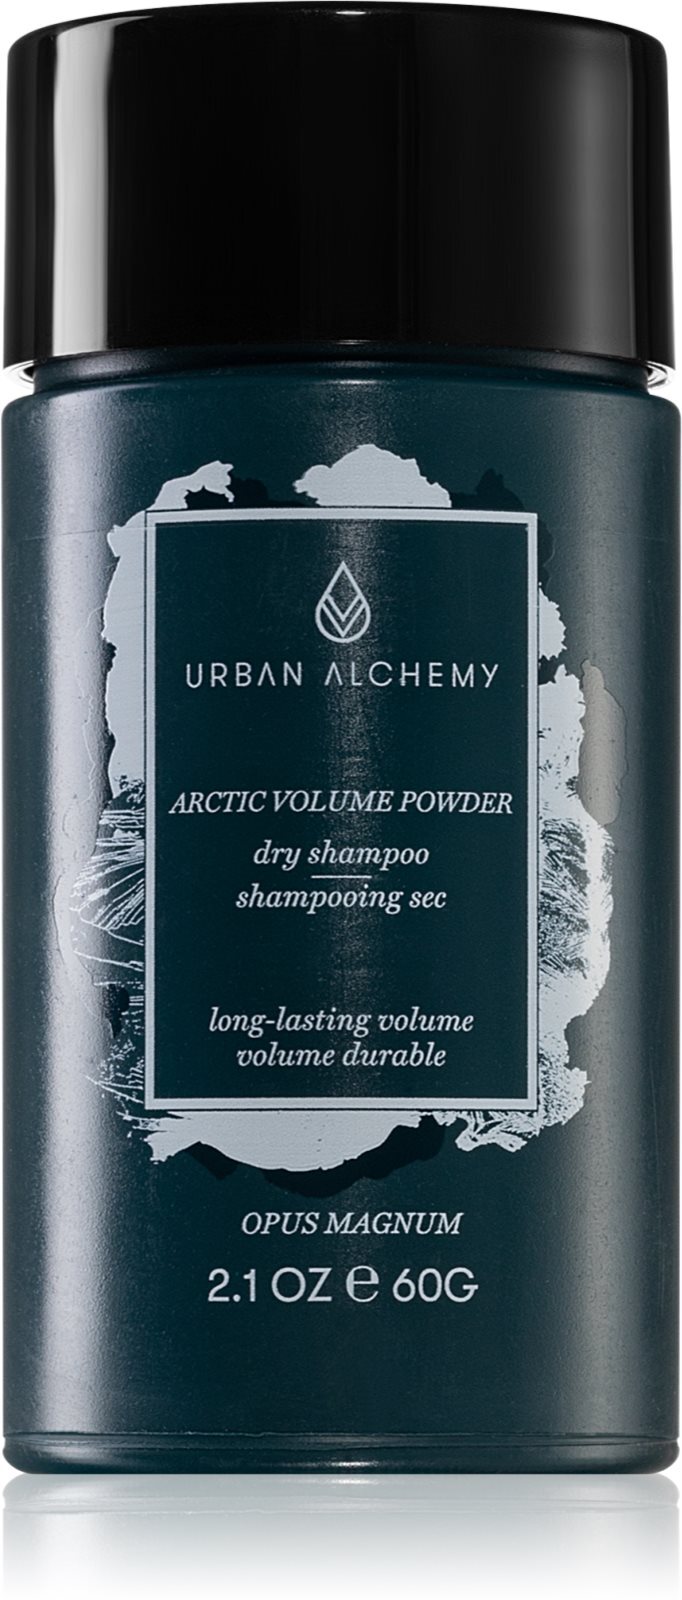 Москве Opus сухой в по шампунь объема для волос | пудре Arctic Urban в Доставка увеличения Alchemy купить Magnum